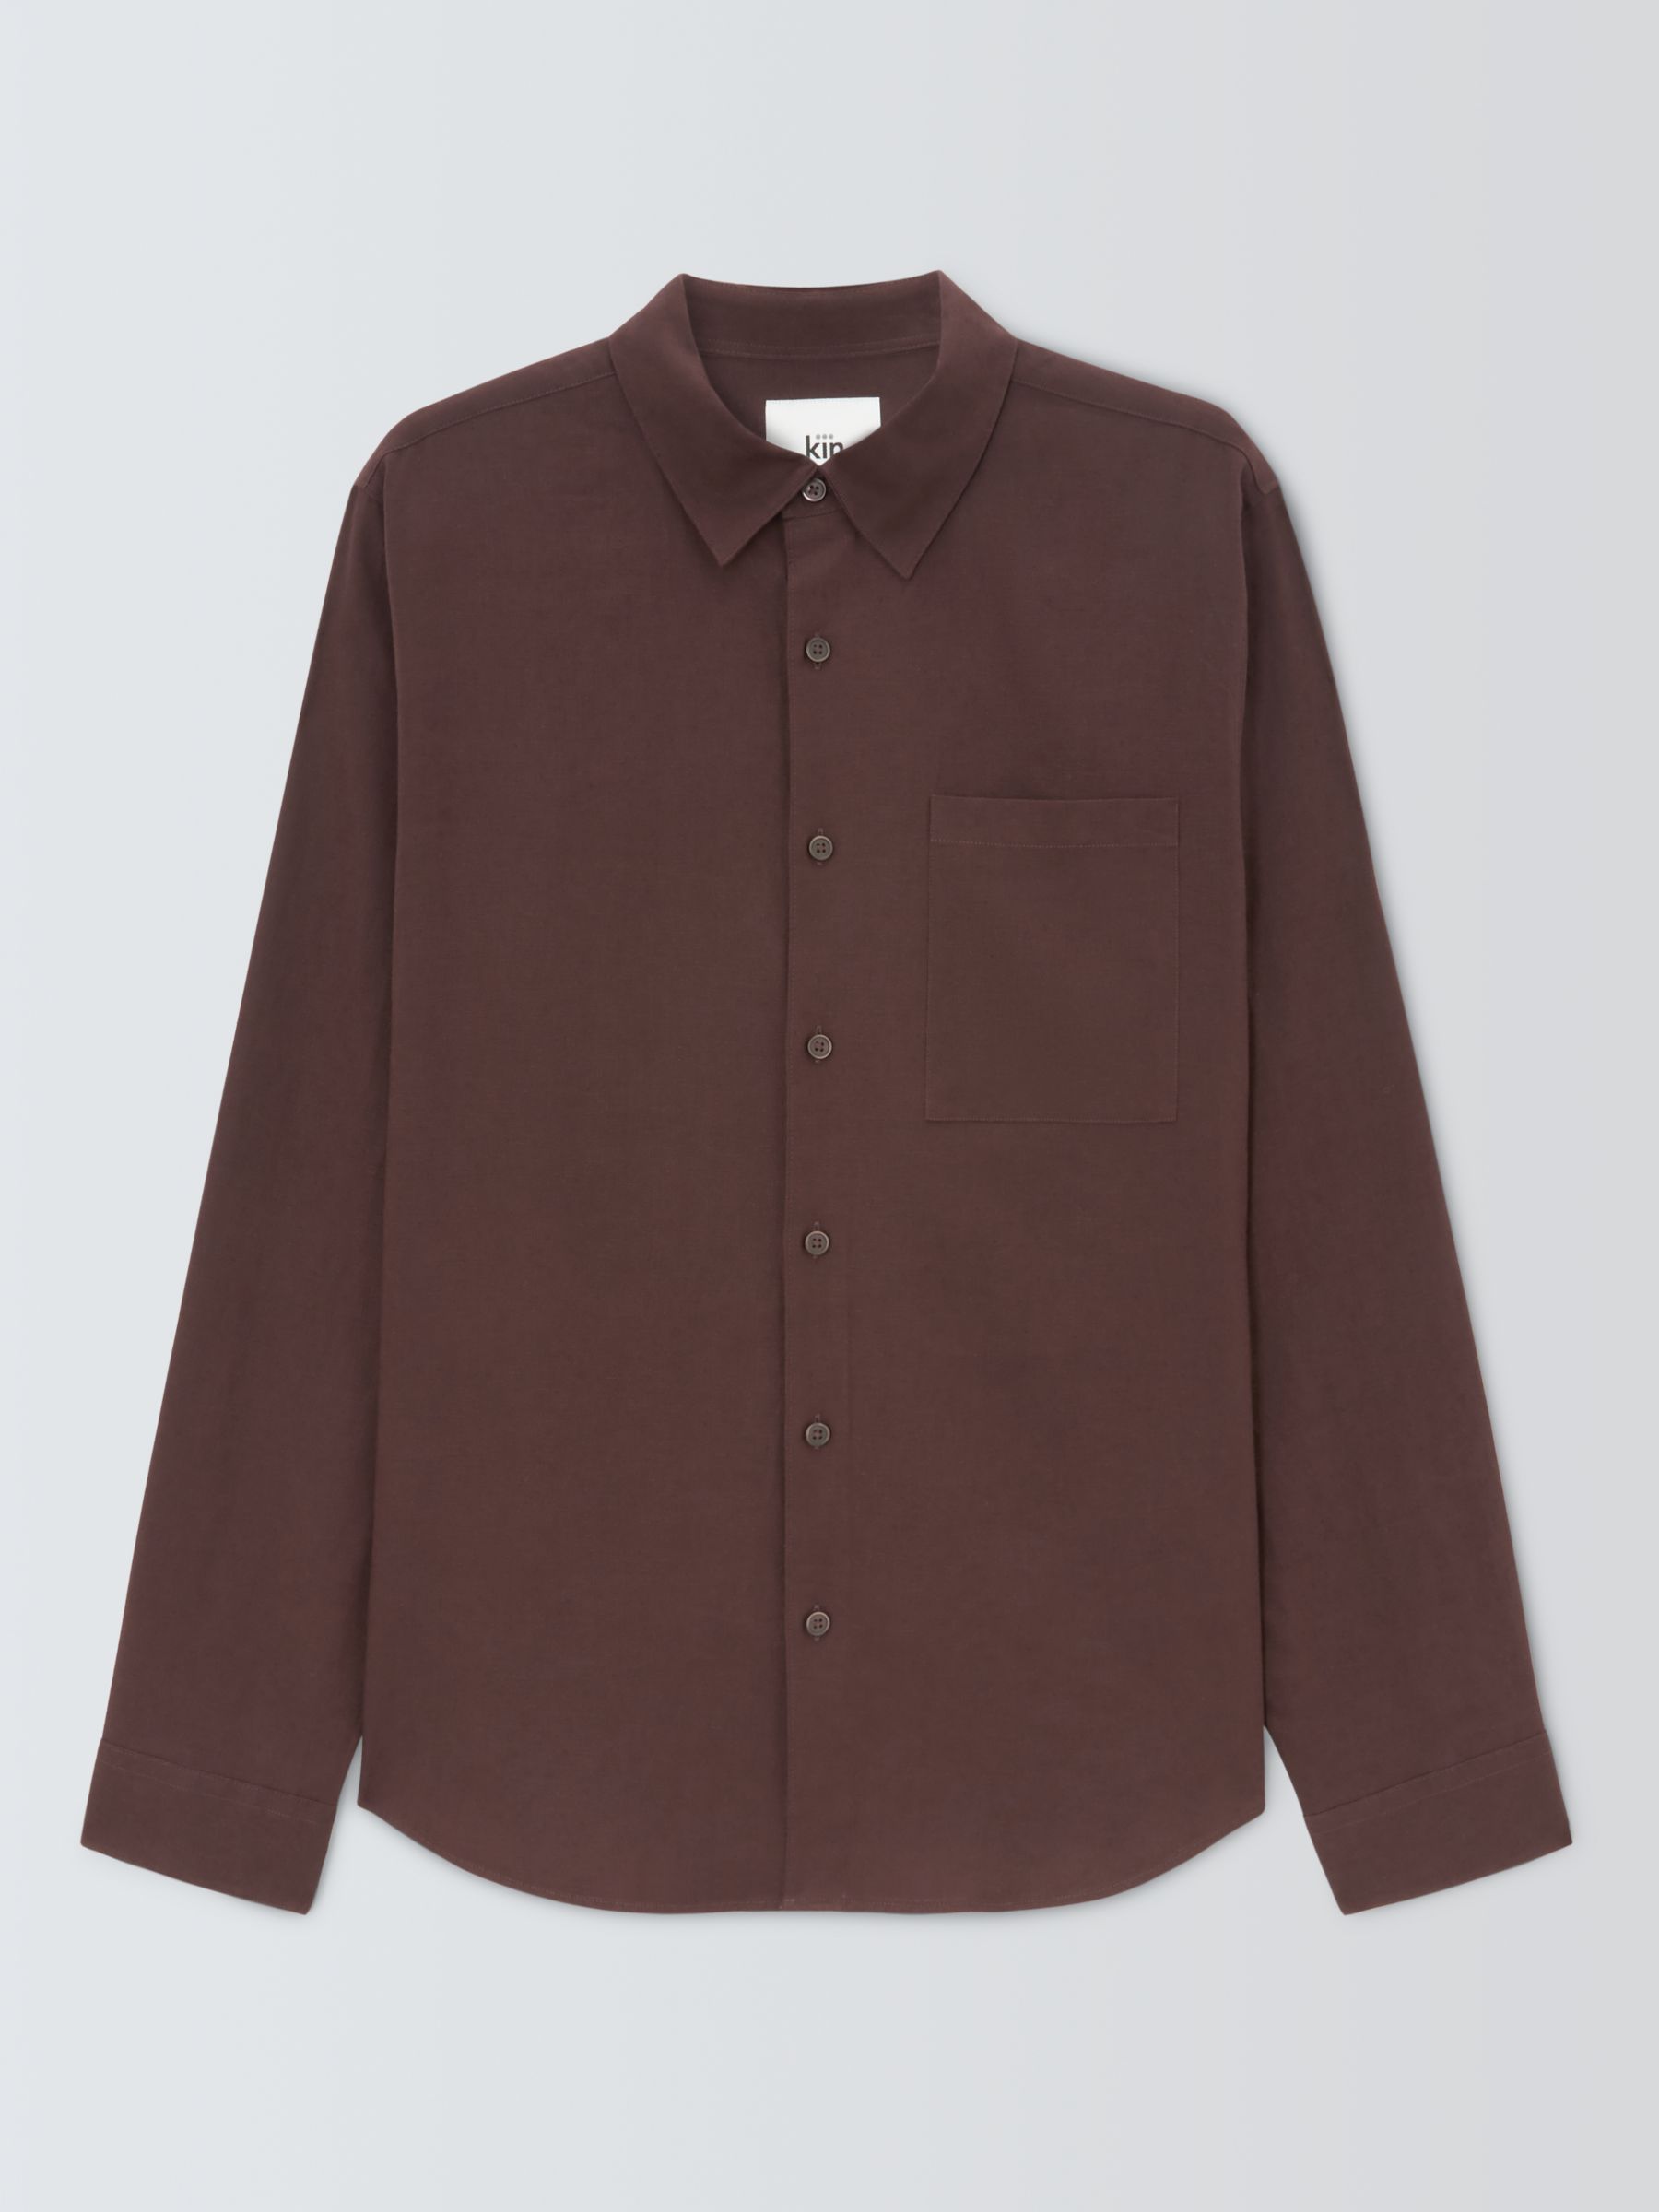 Kin Linen Blend Long Sleeve Shirt, Chocolate Plum, S